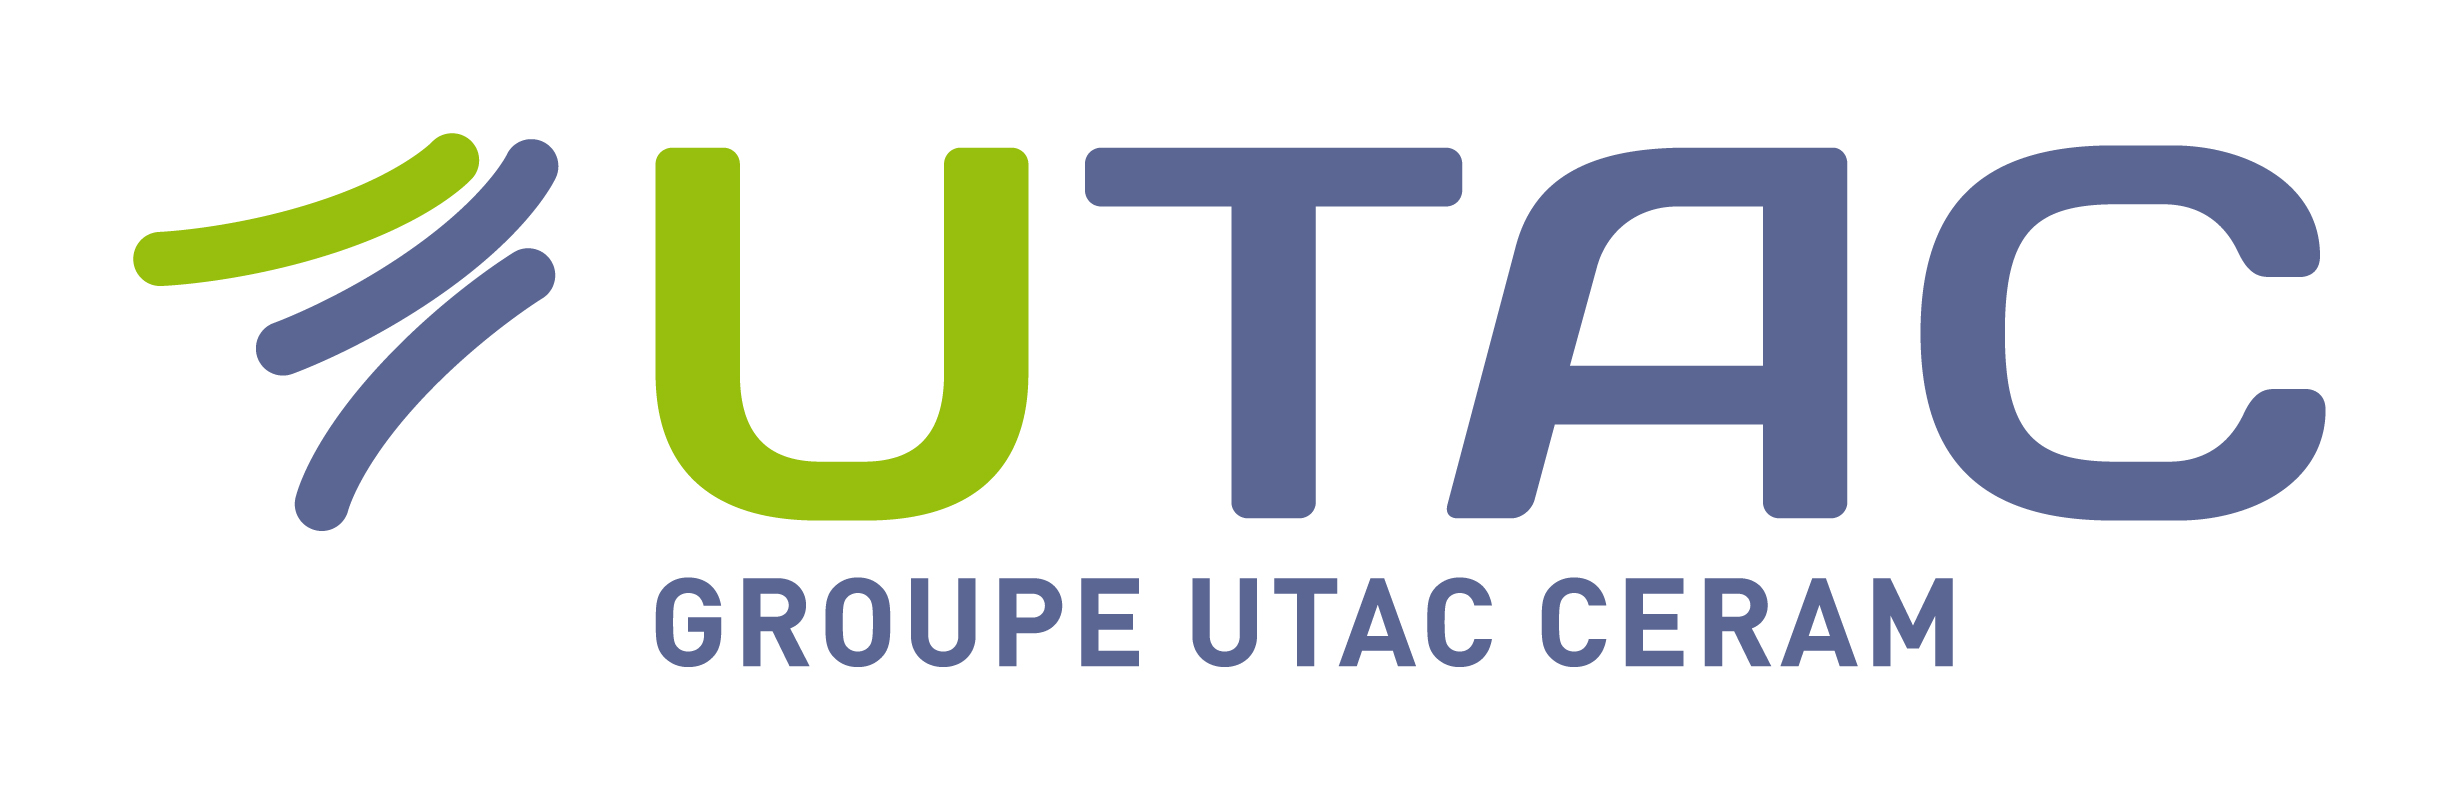 logo utac groupe